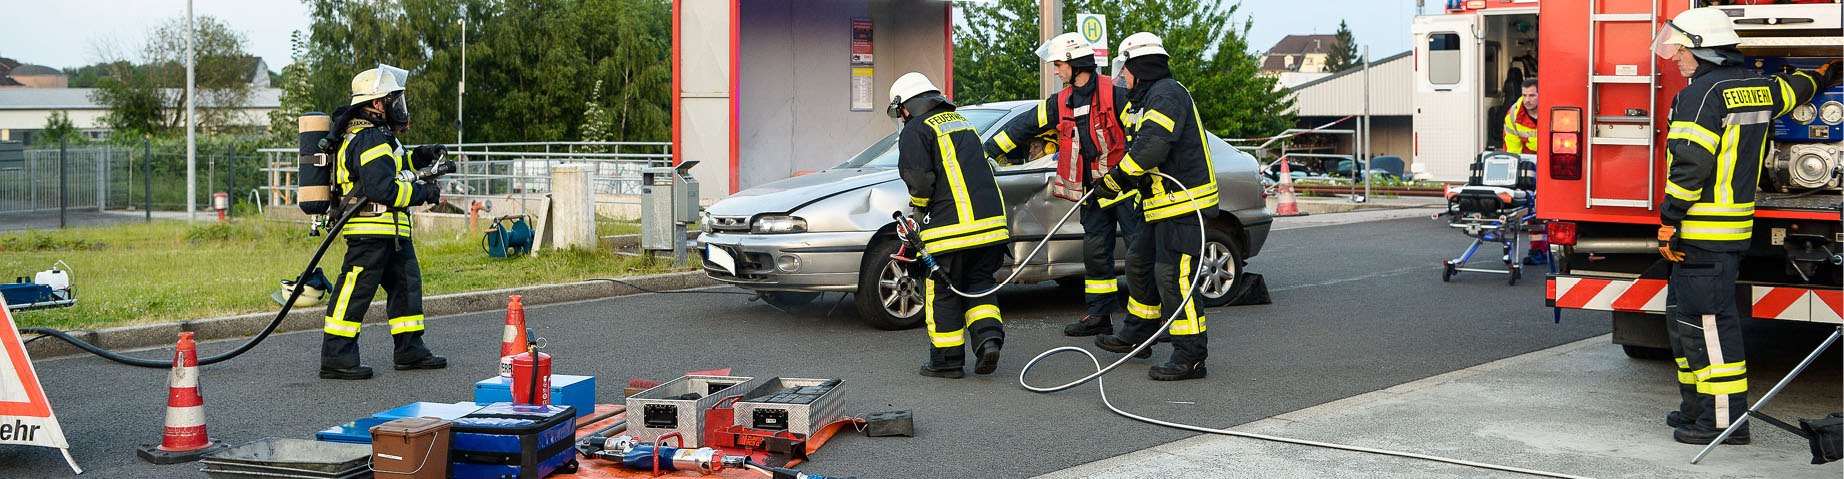 Ein Trupp der Freiwilligen Feuerwehr schneidet ein Auto auf.